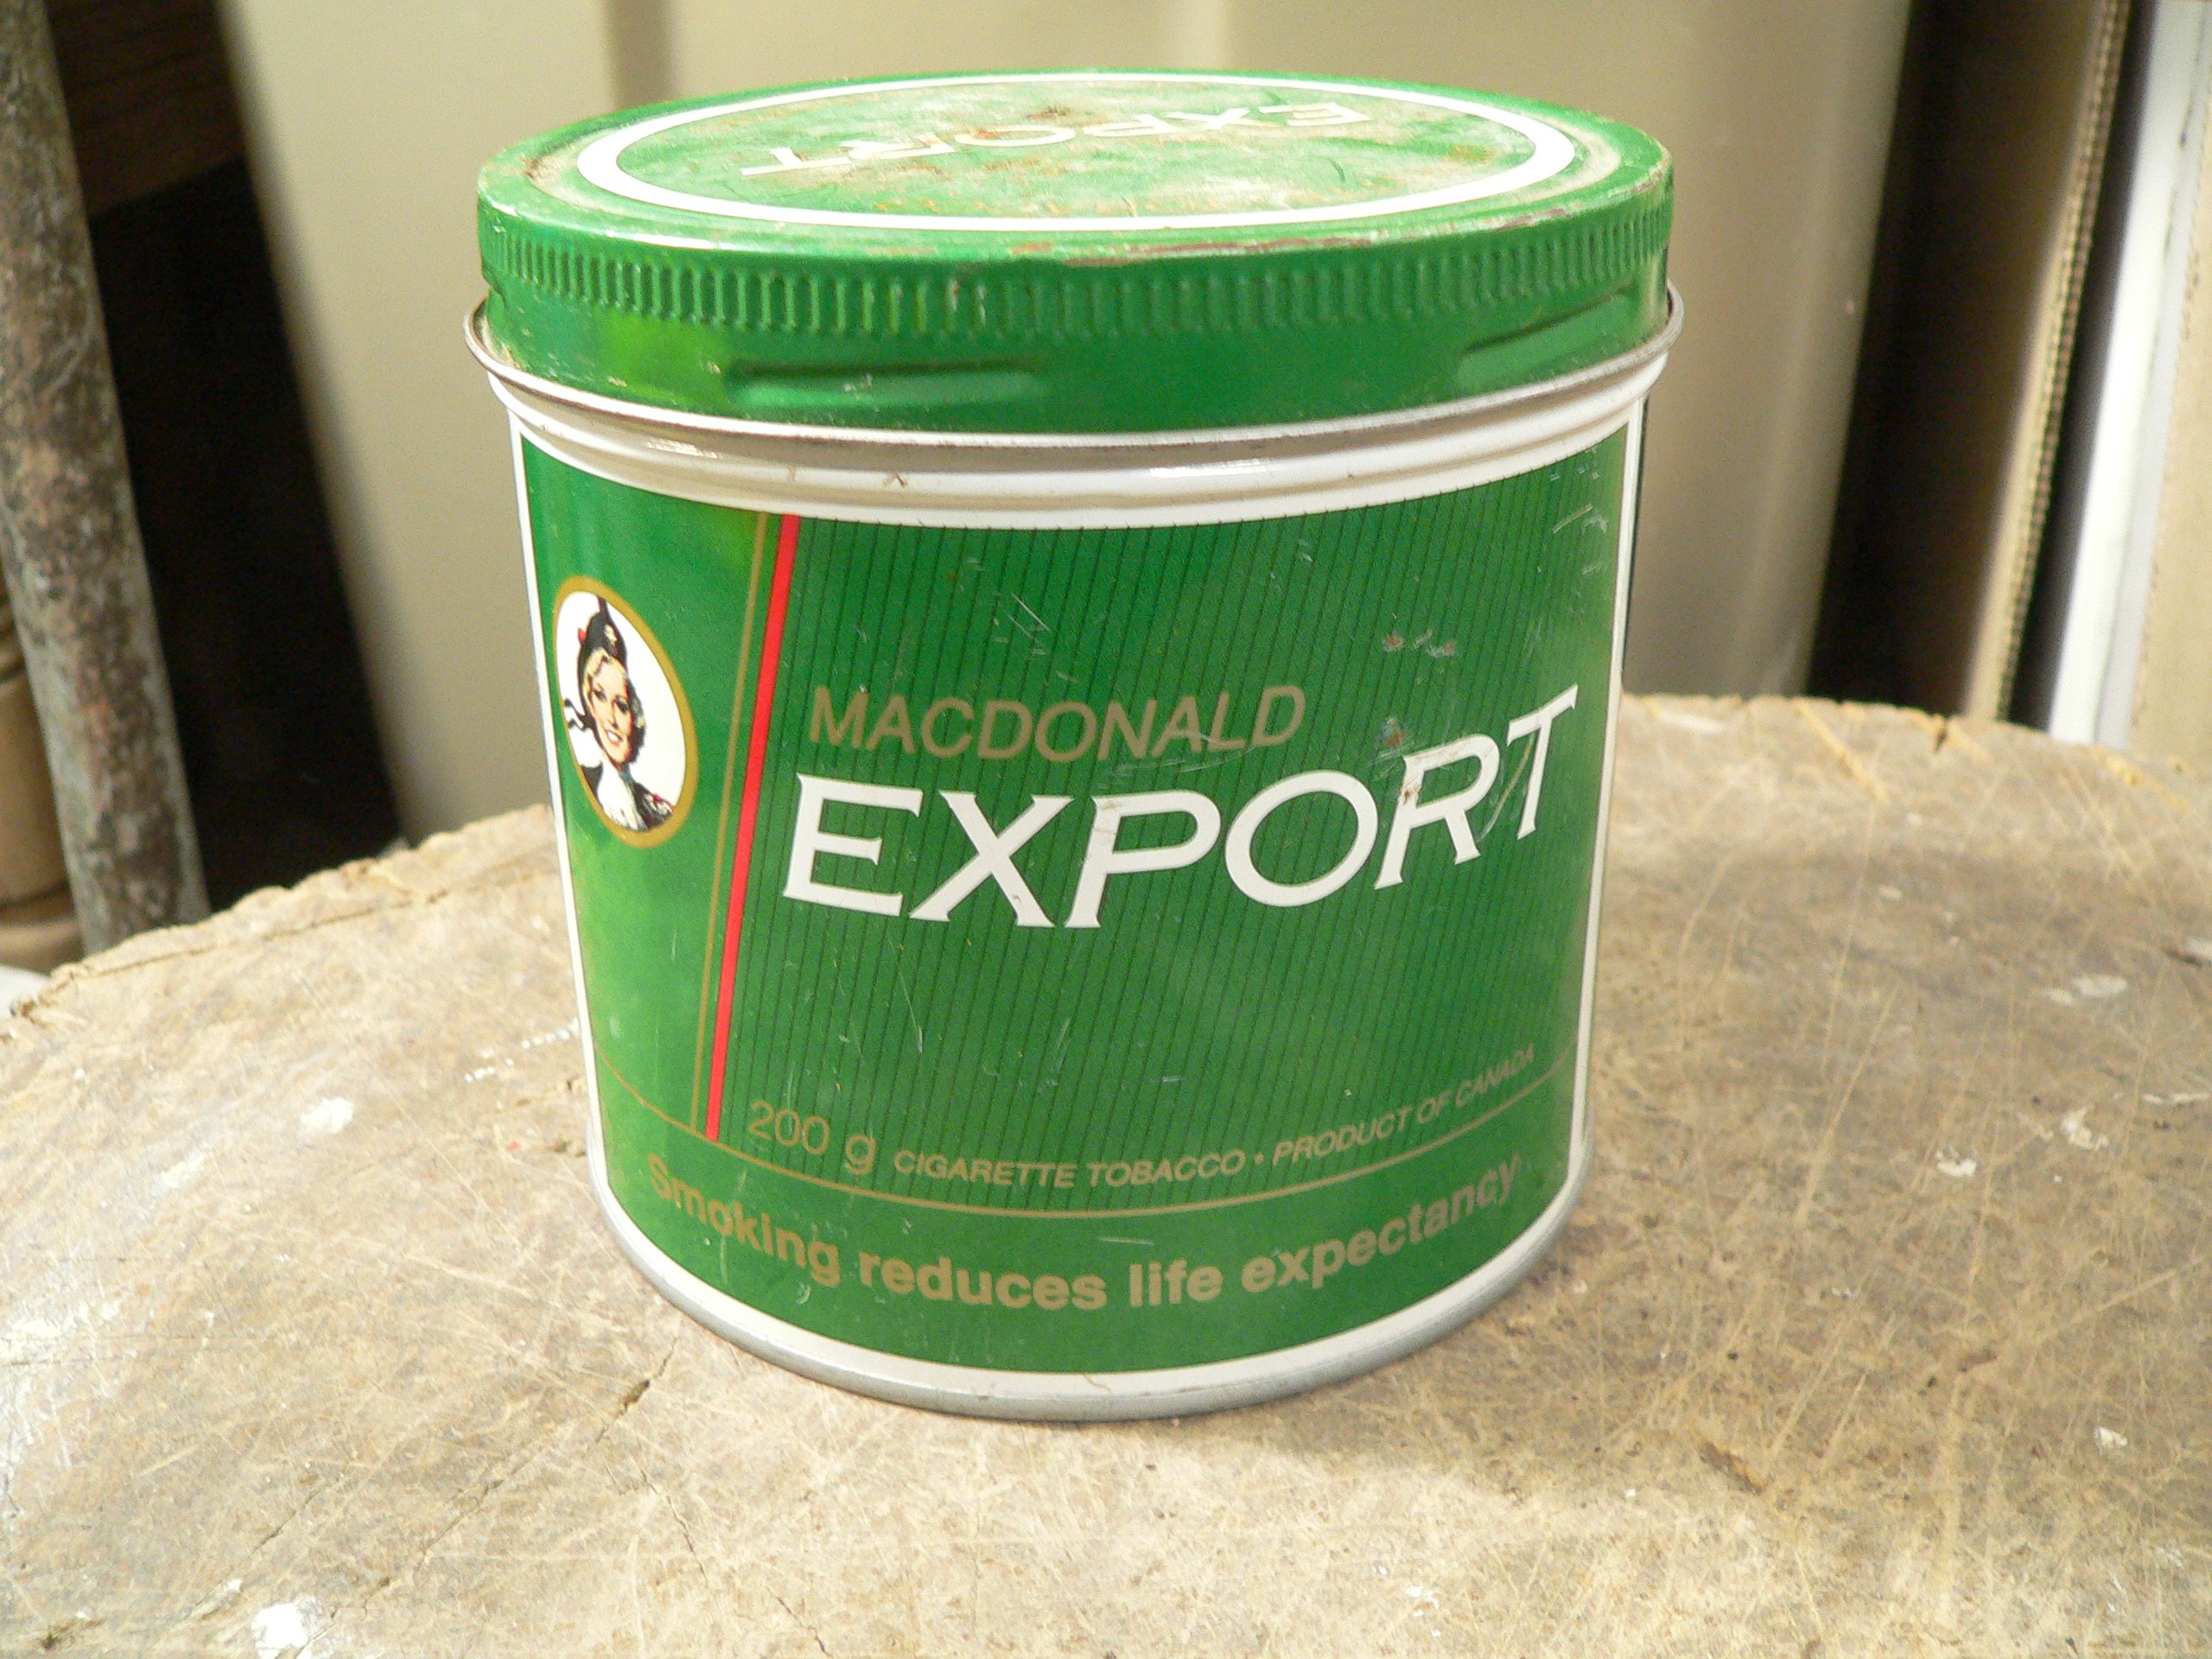 Canne de tabac macdonald export # 8061.2